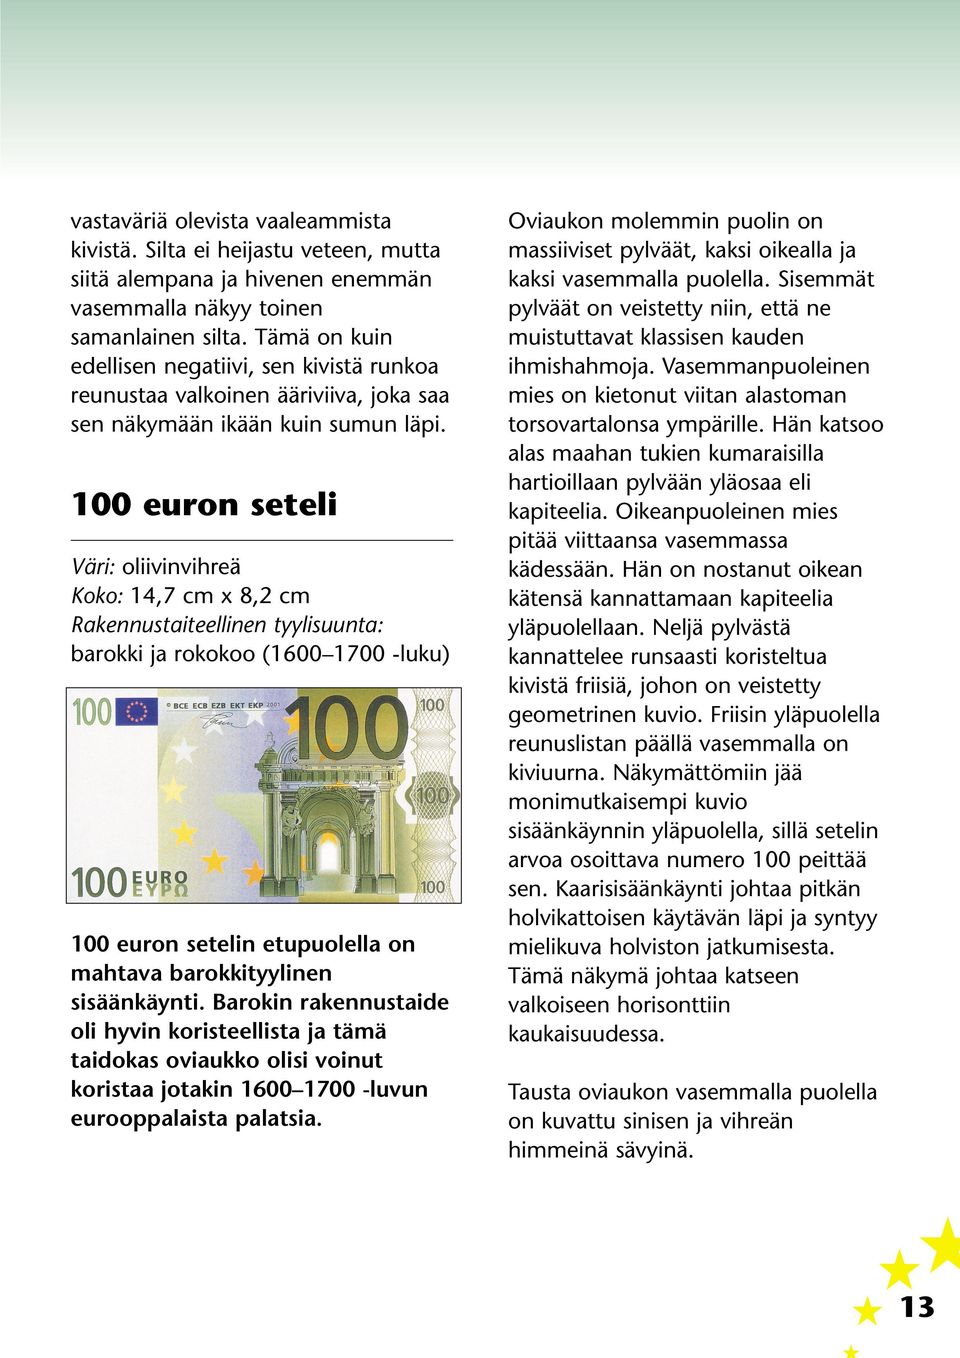 100 euron seteli Väri: oliivinvihreä Koko: 14,7 cm x 8,2 cm Rakennustaiteellinen tyylisuunta: barokki ja rokokoo (1600 1700 -luku) 100 euron setelin etupuolella on mahtava barokkityylinen